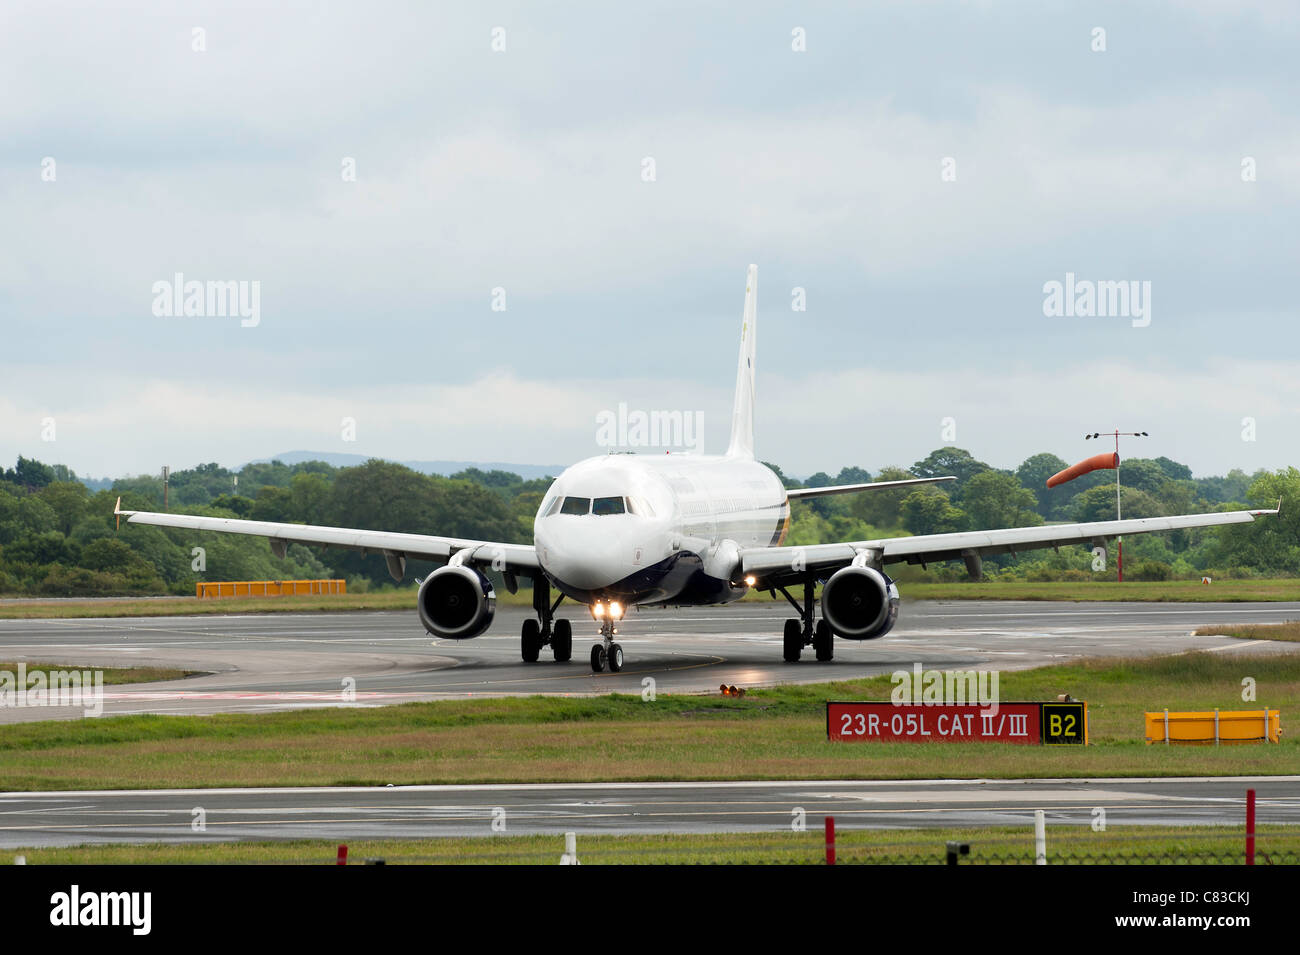 Monarch Airlines avion Airbus A321-231 G-OJEG roulage à l'Aéroport International de Manchester en Angleterre Royaume-Uni UK Banque D'Images